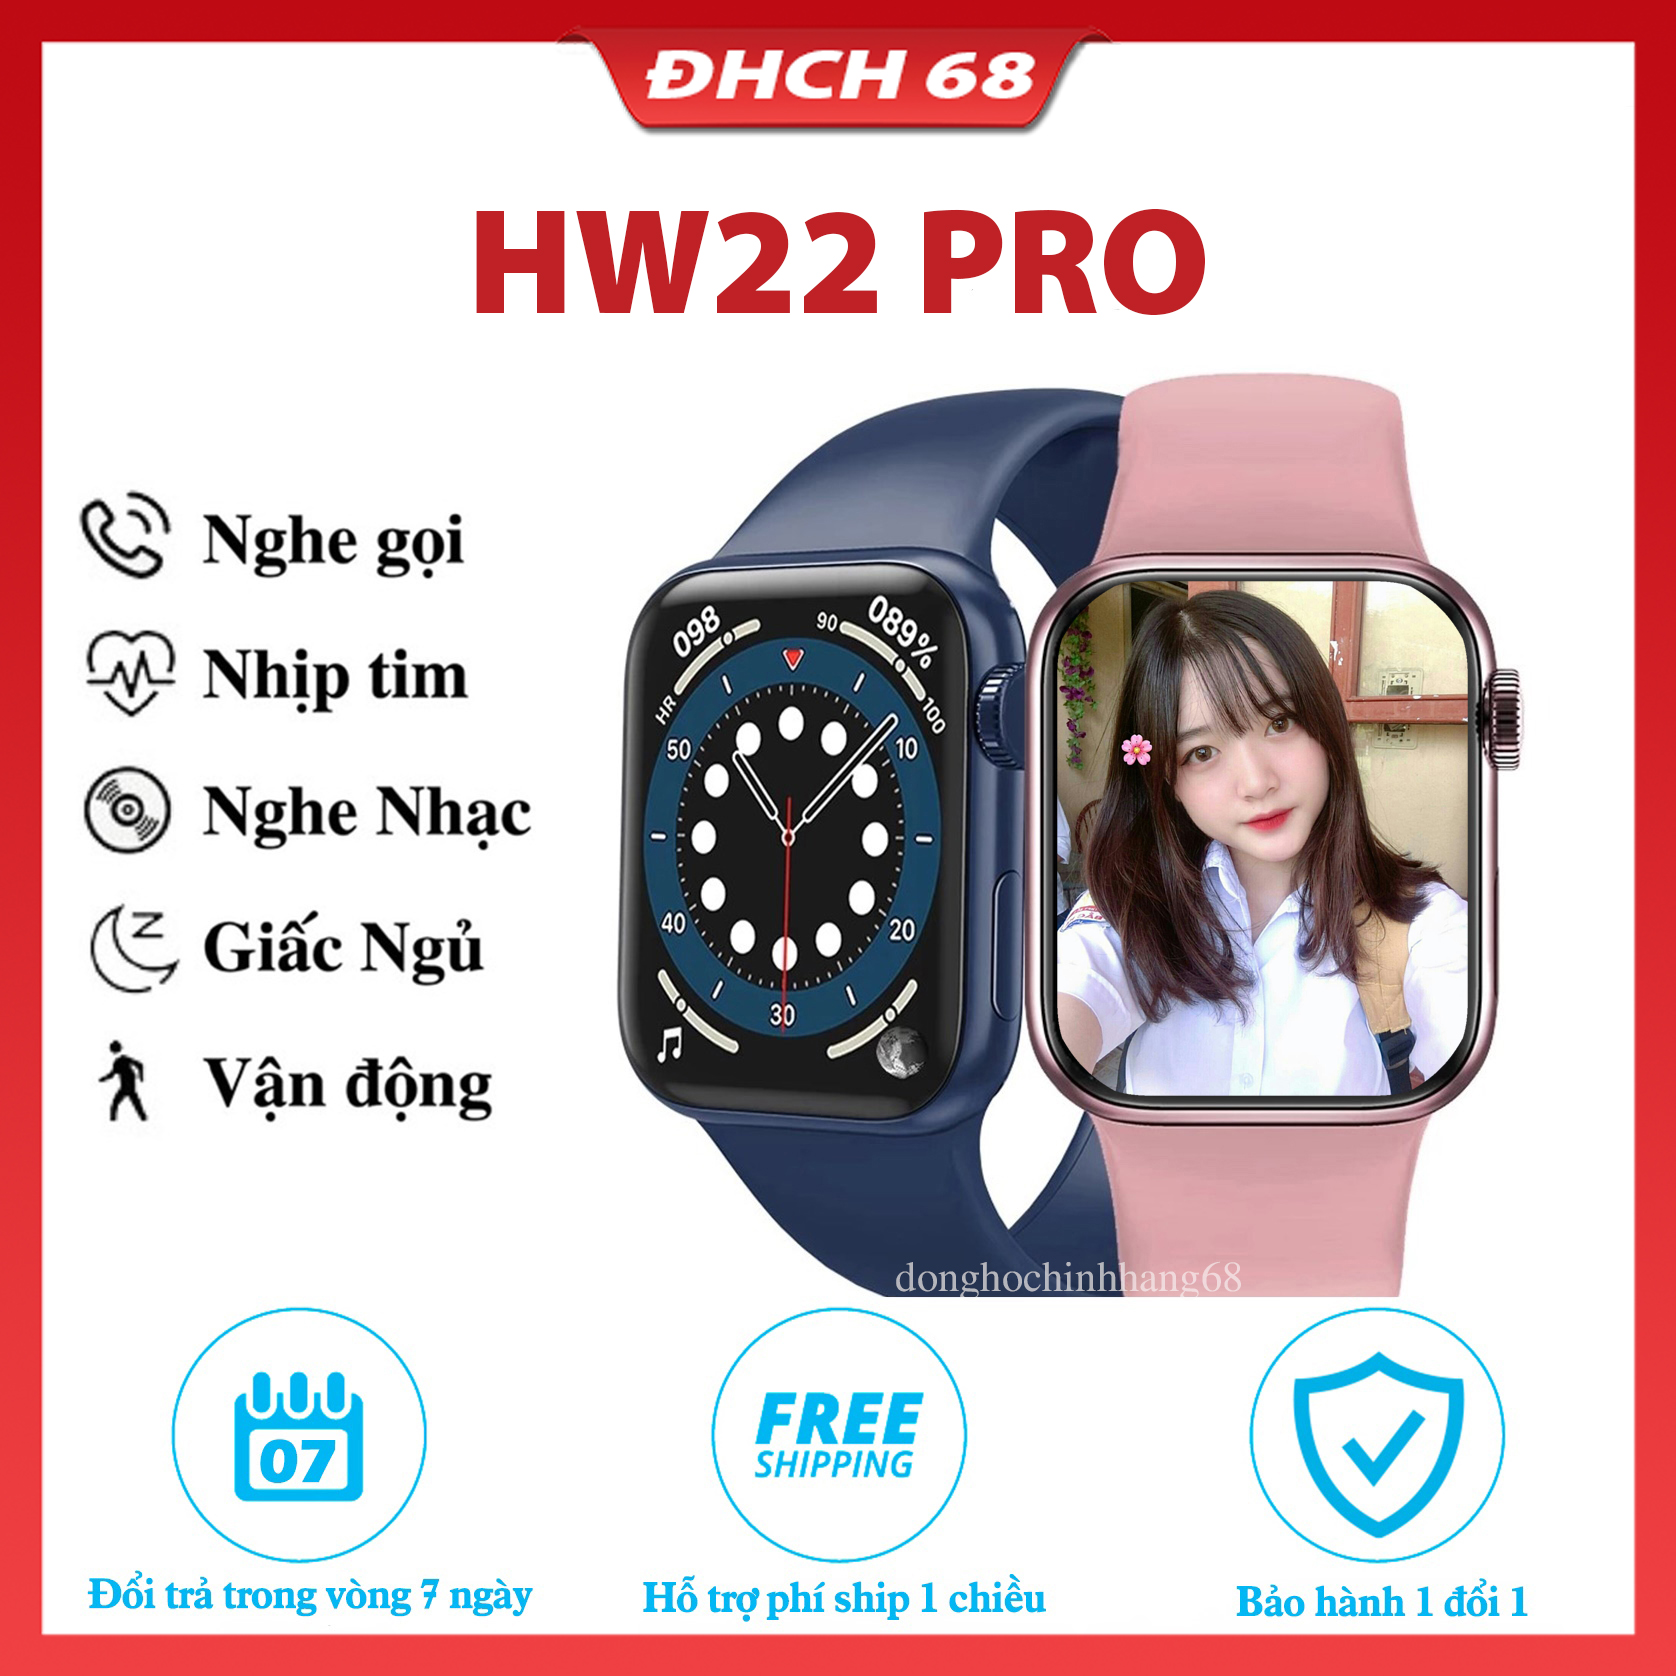 Hw22 Pro Đồng hồ thông Minh Hw22 Pro Premium Full Màn Hình, Đổi Hình Nền Kết Nối Bluetooth Nghe Gọi Cảm Ứng Siêu Mượt, Hw22 Pro seri 6 Sạc không dây chống nước, chơi game, cài mật khẩu